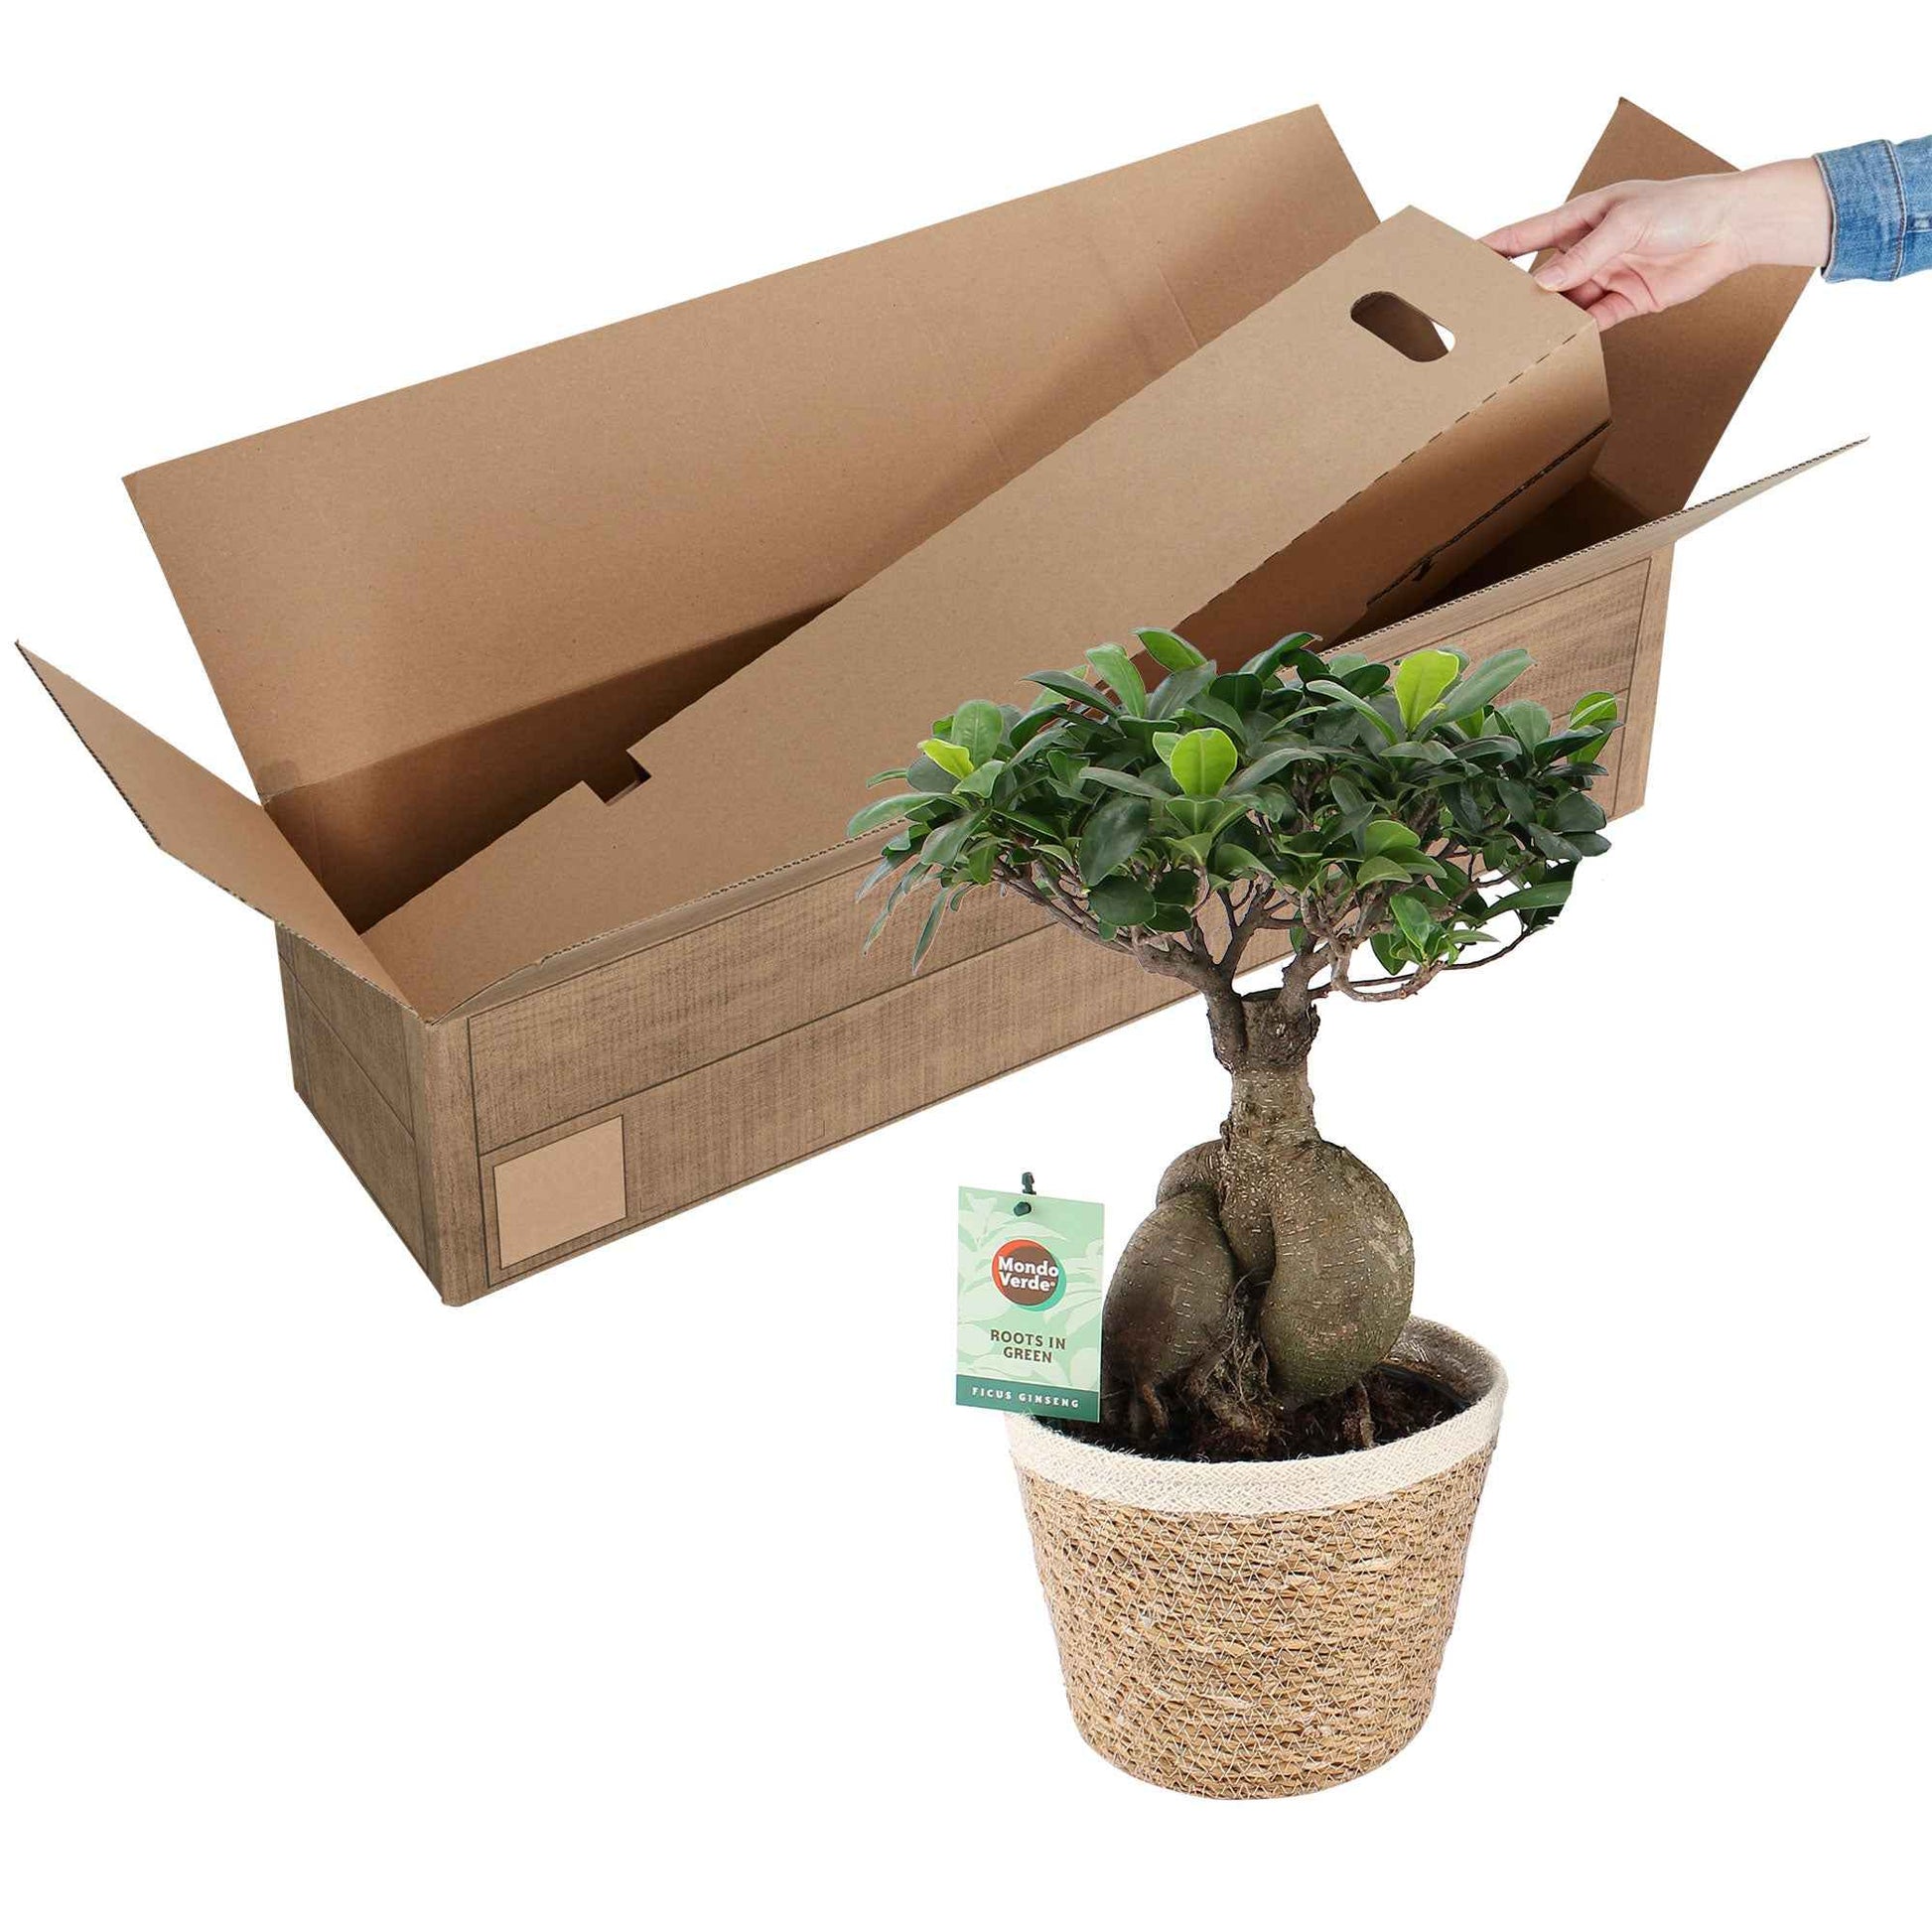 Figuier bonsaï Ficus microcarpa 'Ginseng' XL incl. panier - Plantes d'intérieur avec cache-pot